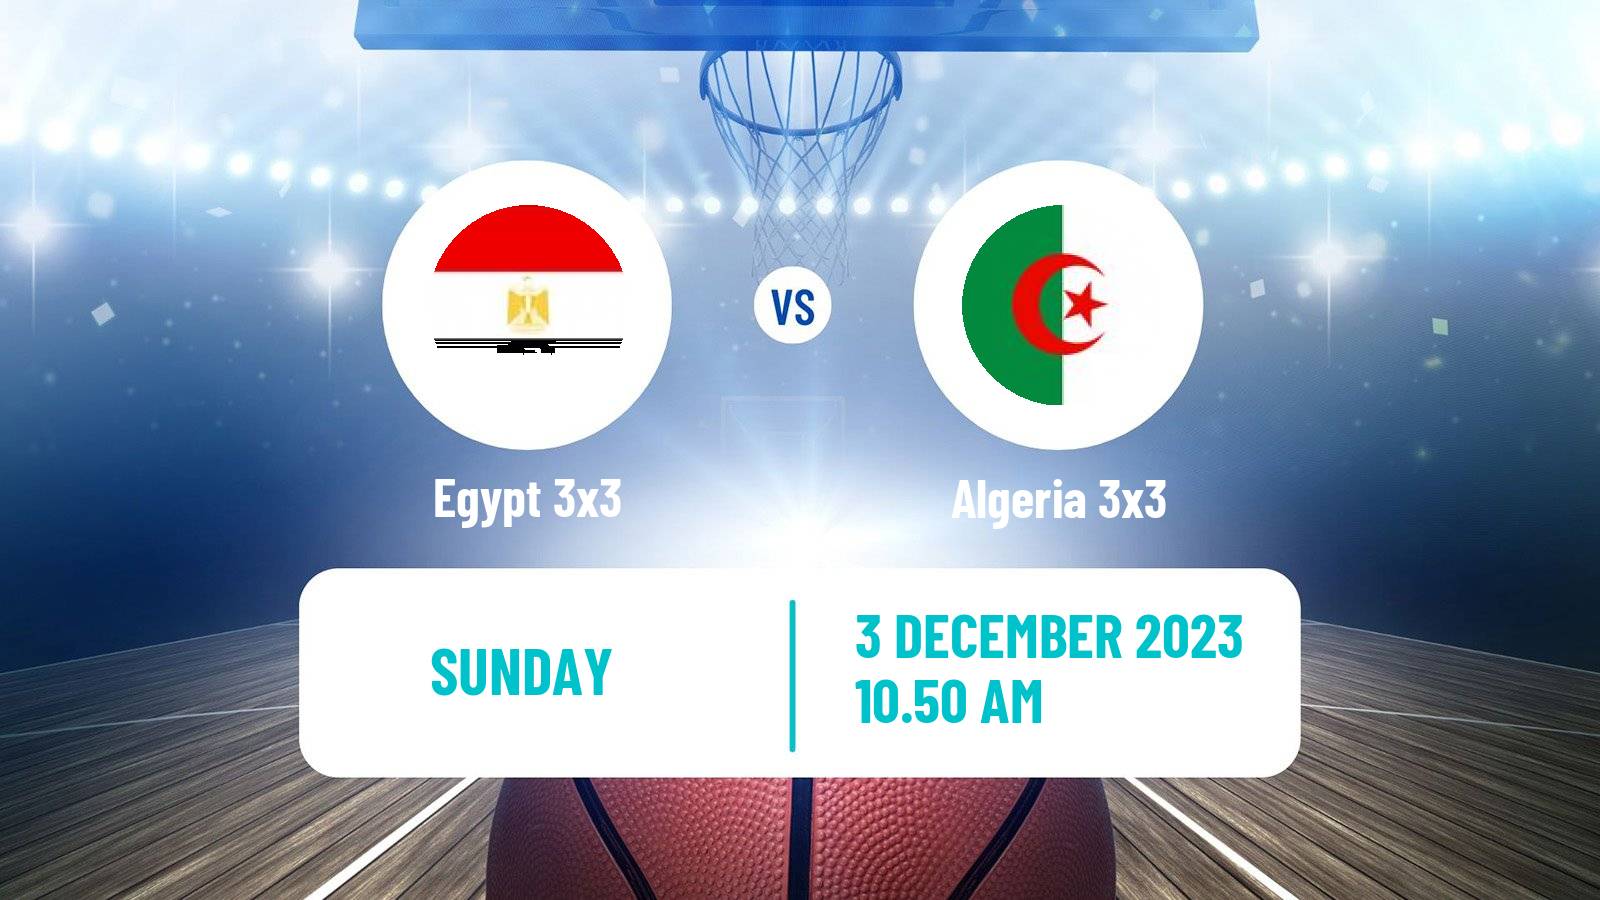 Basketball Africa Cup 3x3 Egypt 3x3 - Algeria 3x3